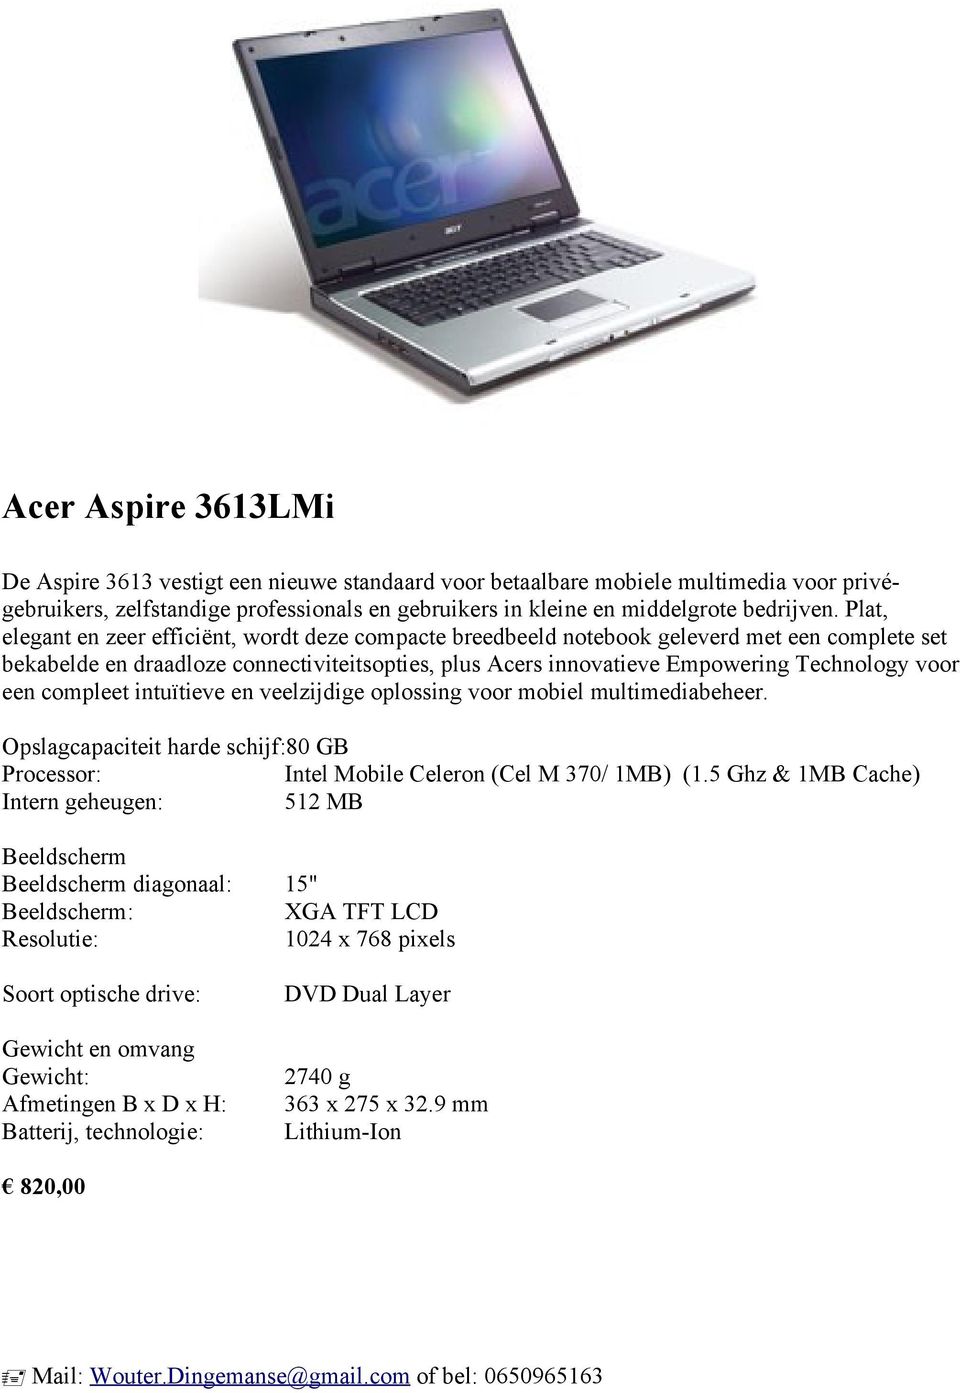 Plat, elegant en zeer efficiënt, wordt deze compacte breedbeeld notebook geleverd met een complete set bekabelde en draadloze connectiviteitsopties, plus Acers innovatieve